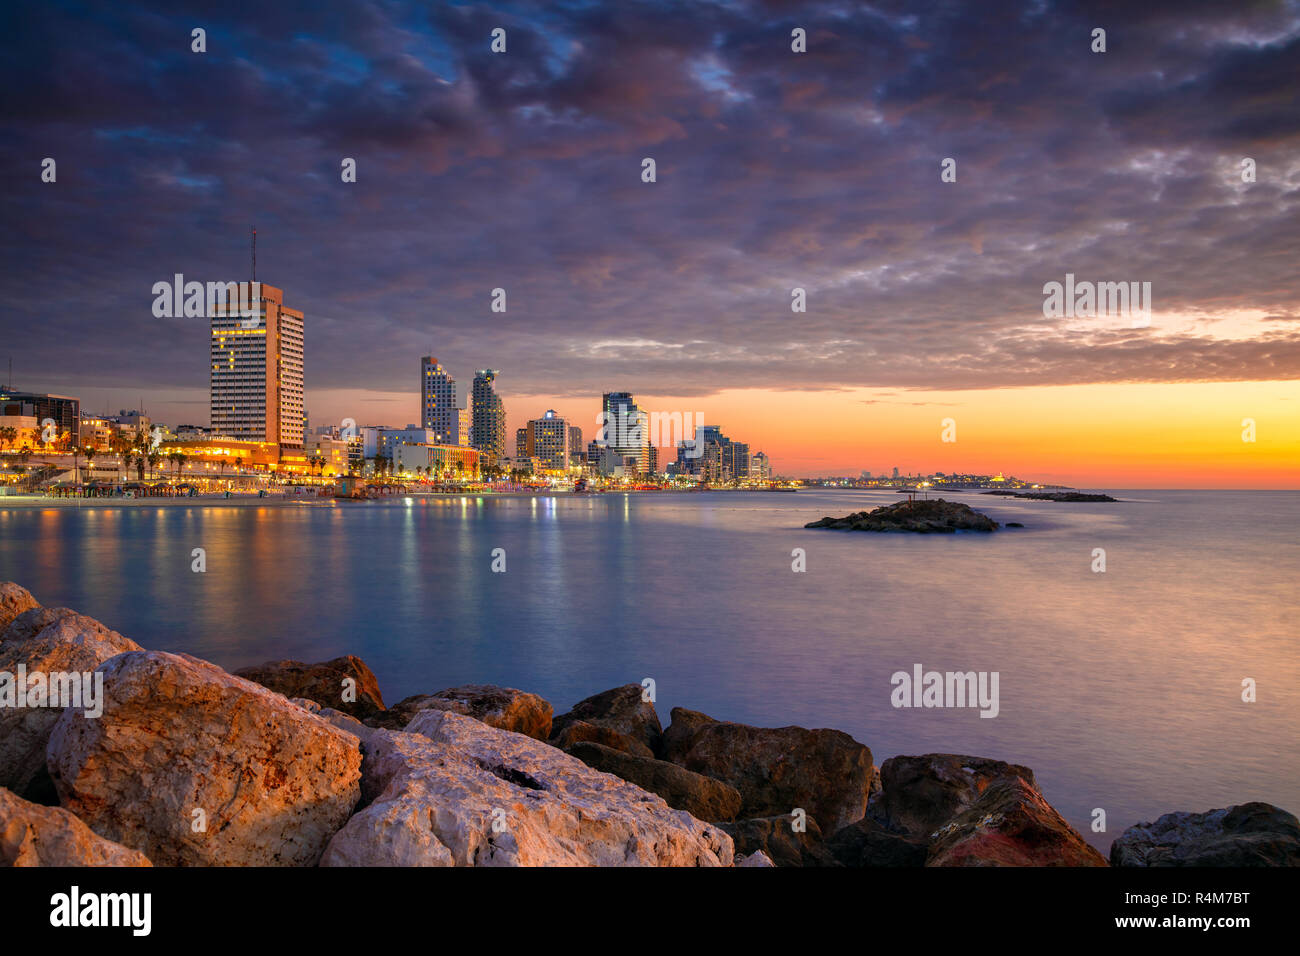 Skyline von Tel Aviv. Stadtbild Bild von Tel Aviv, Israel während des Sonnenuntergangs. Stockfoto